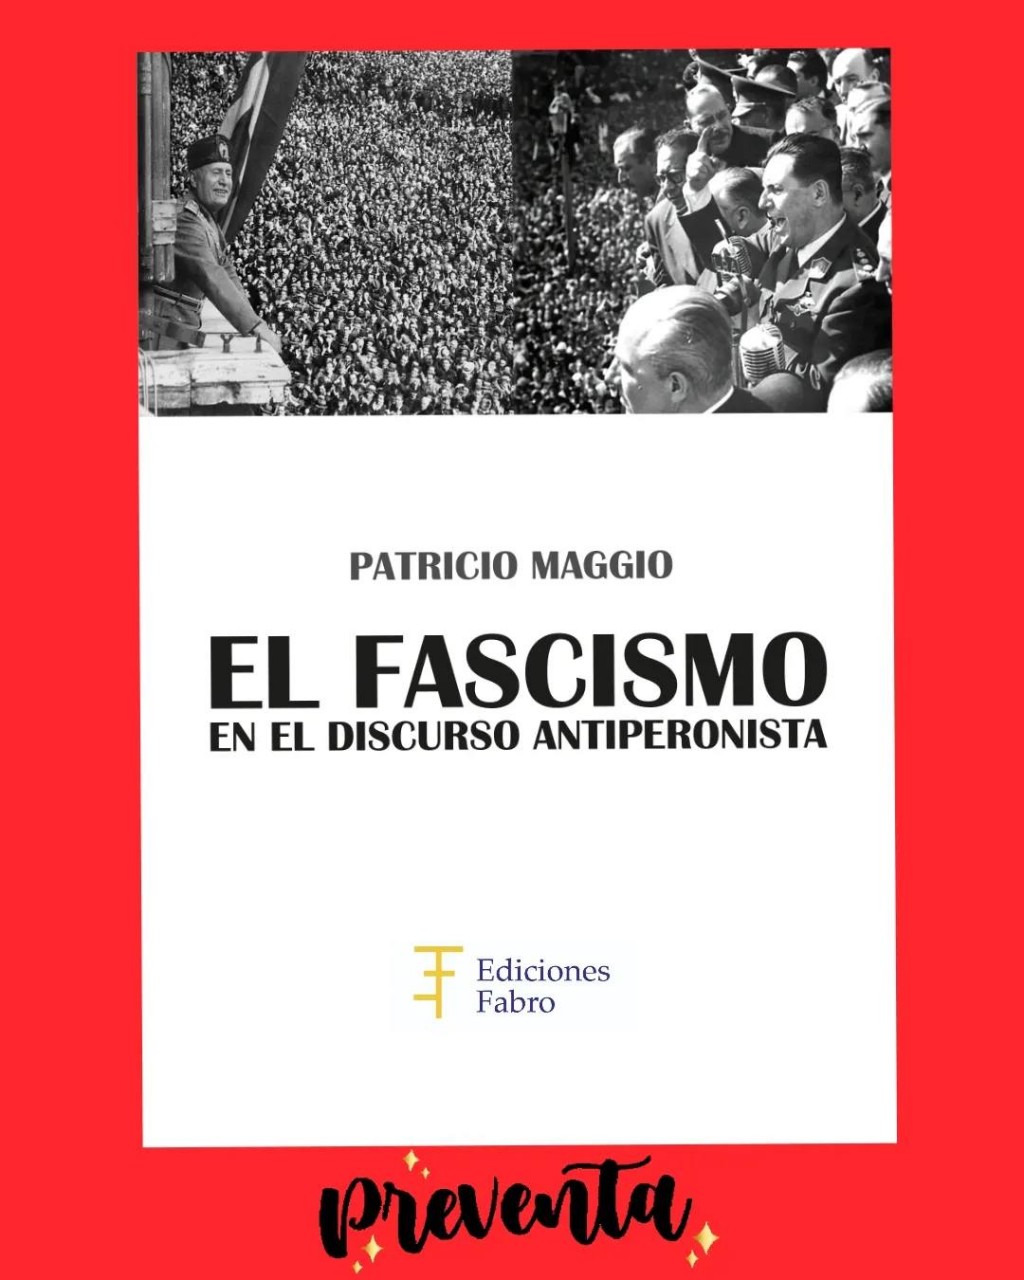 Patricio Maggio  publica un importante libro sobre el peronismo 